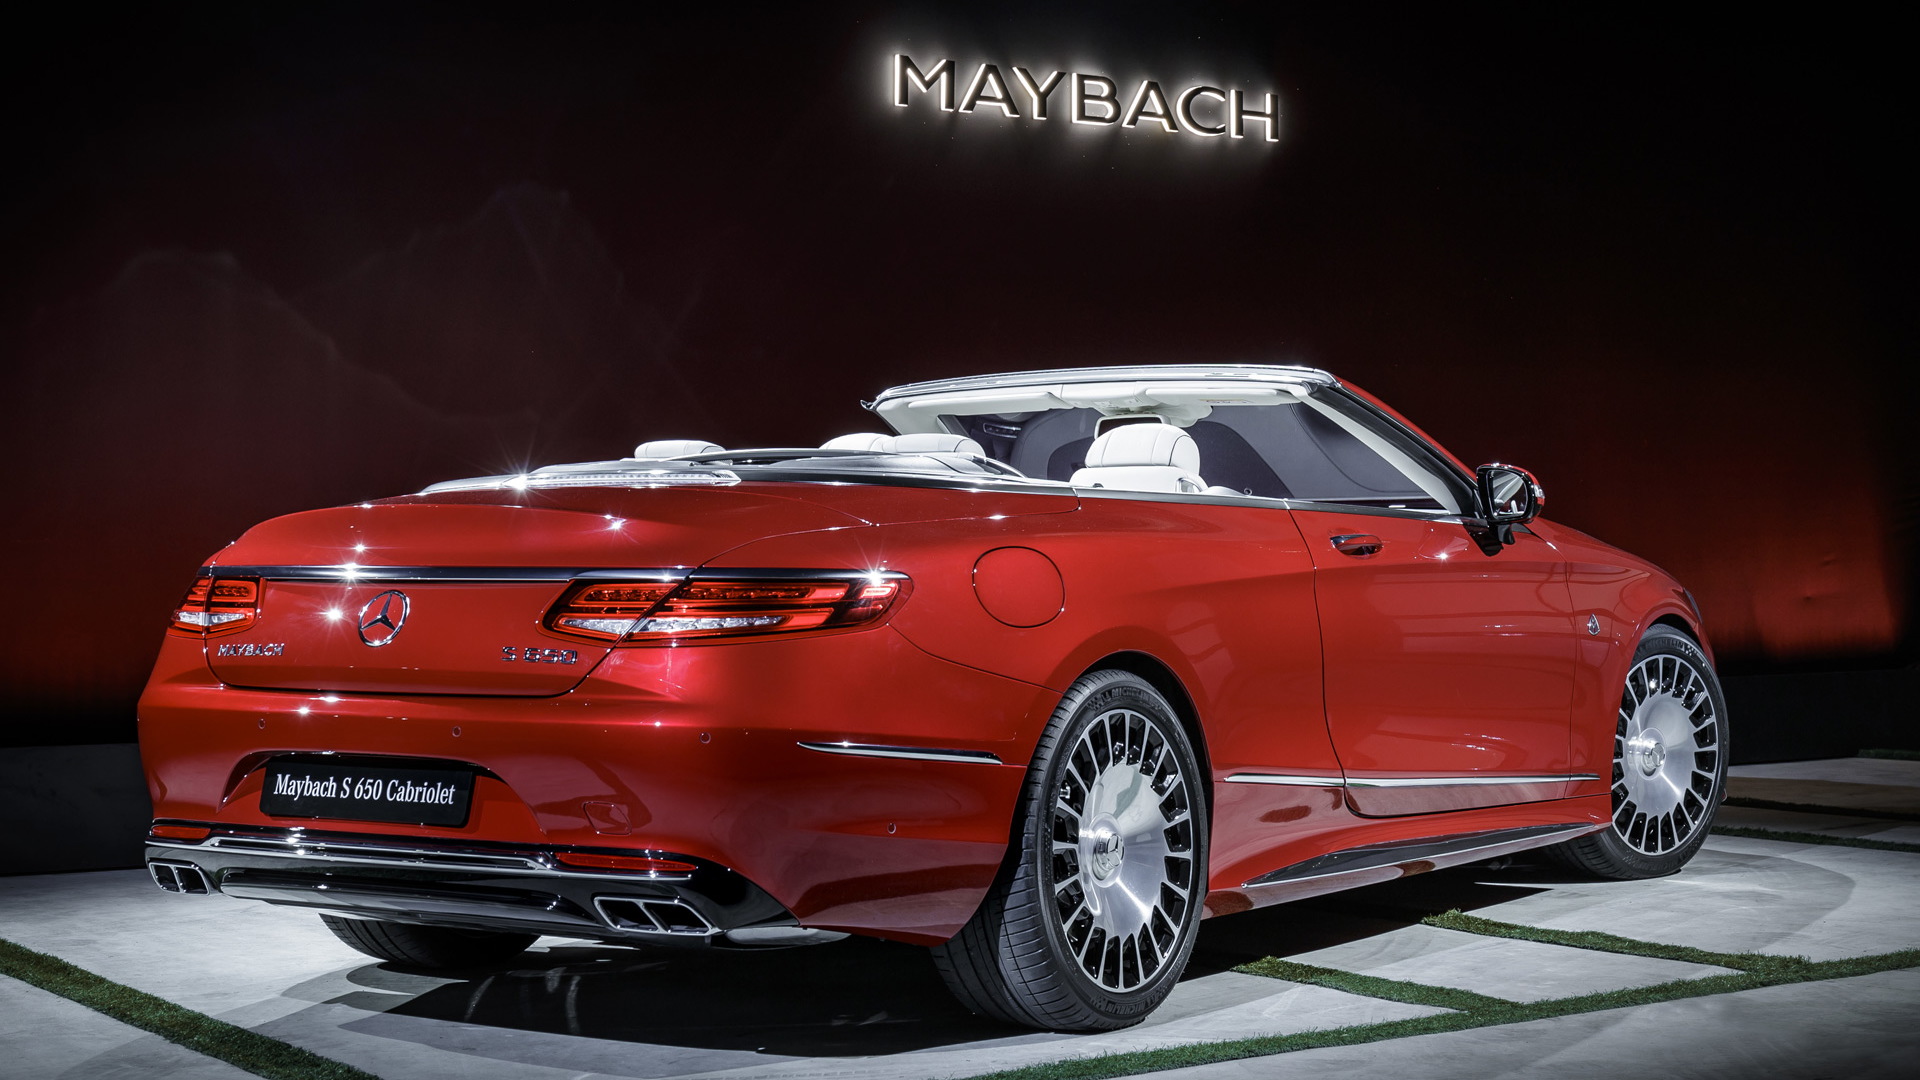 2017 Mercedes-Maybach S650 Cabriolet, 2016 Los Angeles auto show